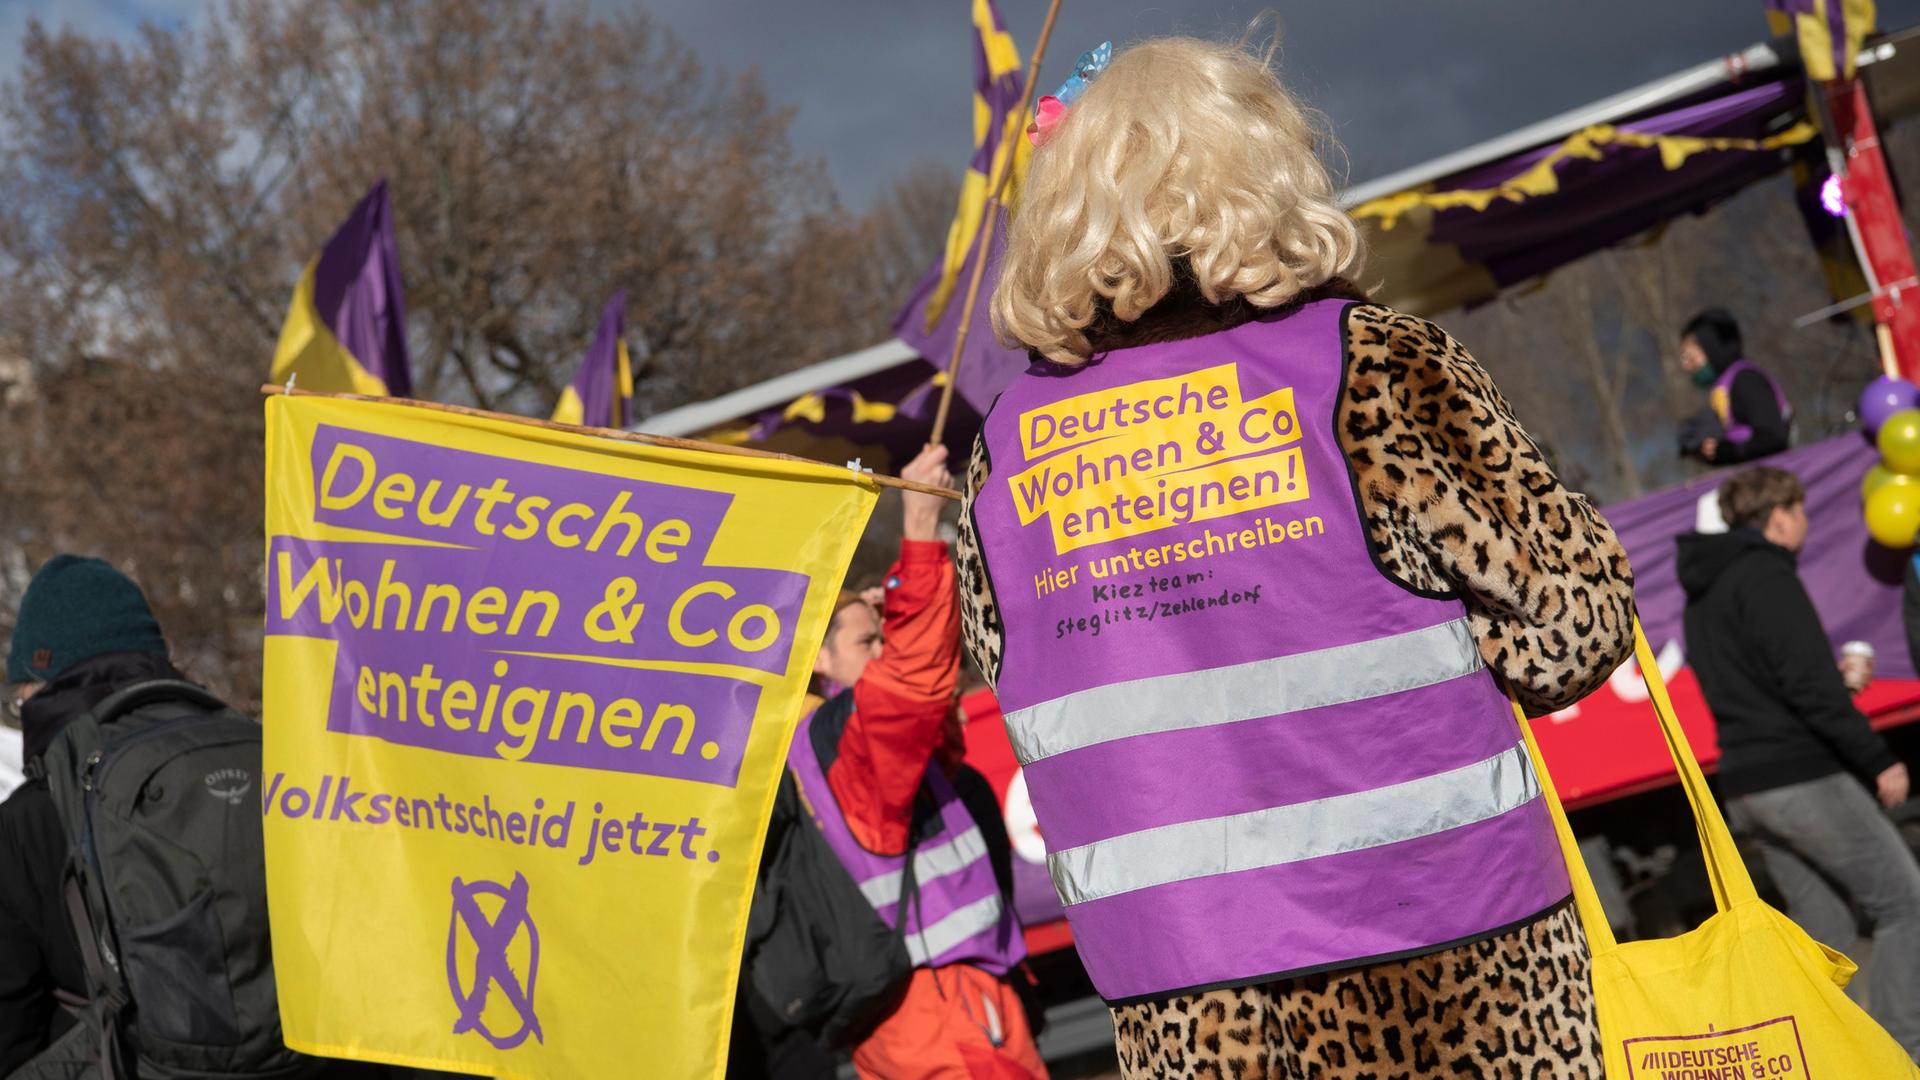 Mit einer Fahne und einer Weste des Bündnisses "Deutsche Wohnen und Co enteignen" steht ein Teilnehmer der Demonstration "Karneval der Enteignung" in Kreuzberg auf dem Oranienplatz. Er trägt eine blonde Perücke. Um ihn herum werden Transparente hochgehalten.